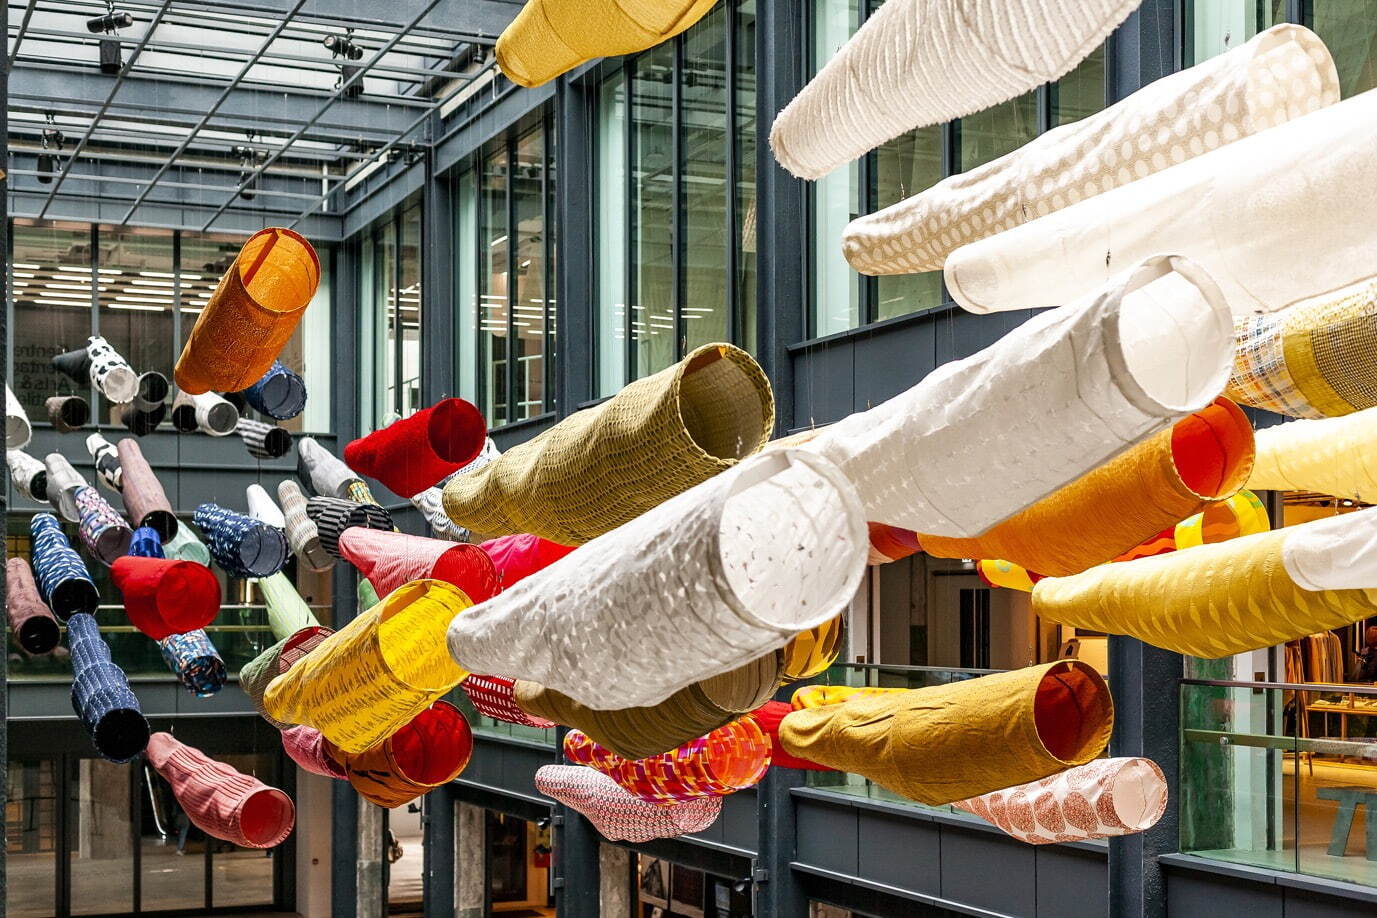 須藤玲子＆アドリアン・ガルデール 《こいのぼり》(部分) 2008年/2019年
展示風景：「Sudo Reiko: Making NUNO Textiles」CHAT (Centre for Heritage, Arts and Textile) Hong Kong、2019-2020
©CHAT (Centre for Heritage, Arts and Textile) Hong Kong